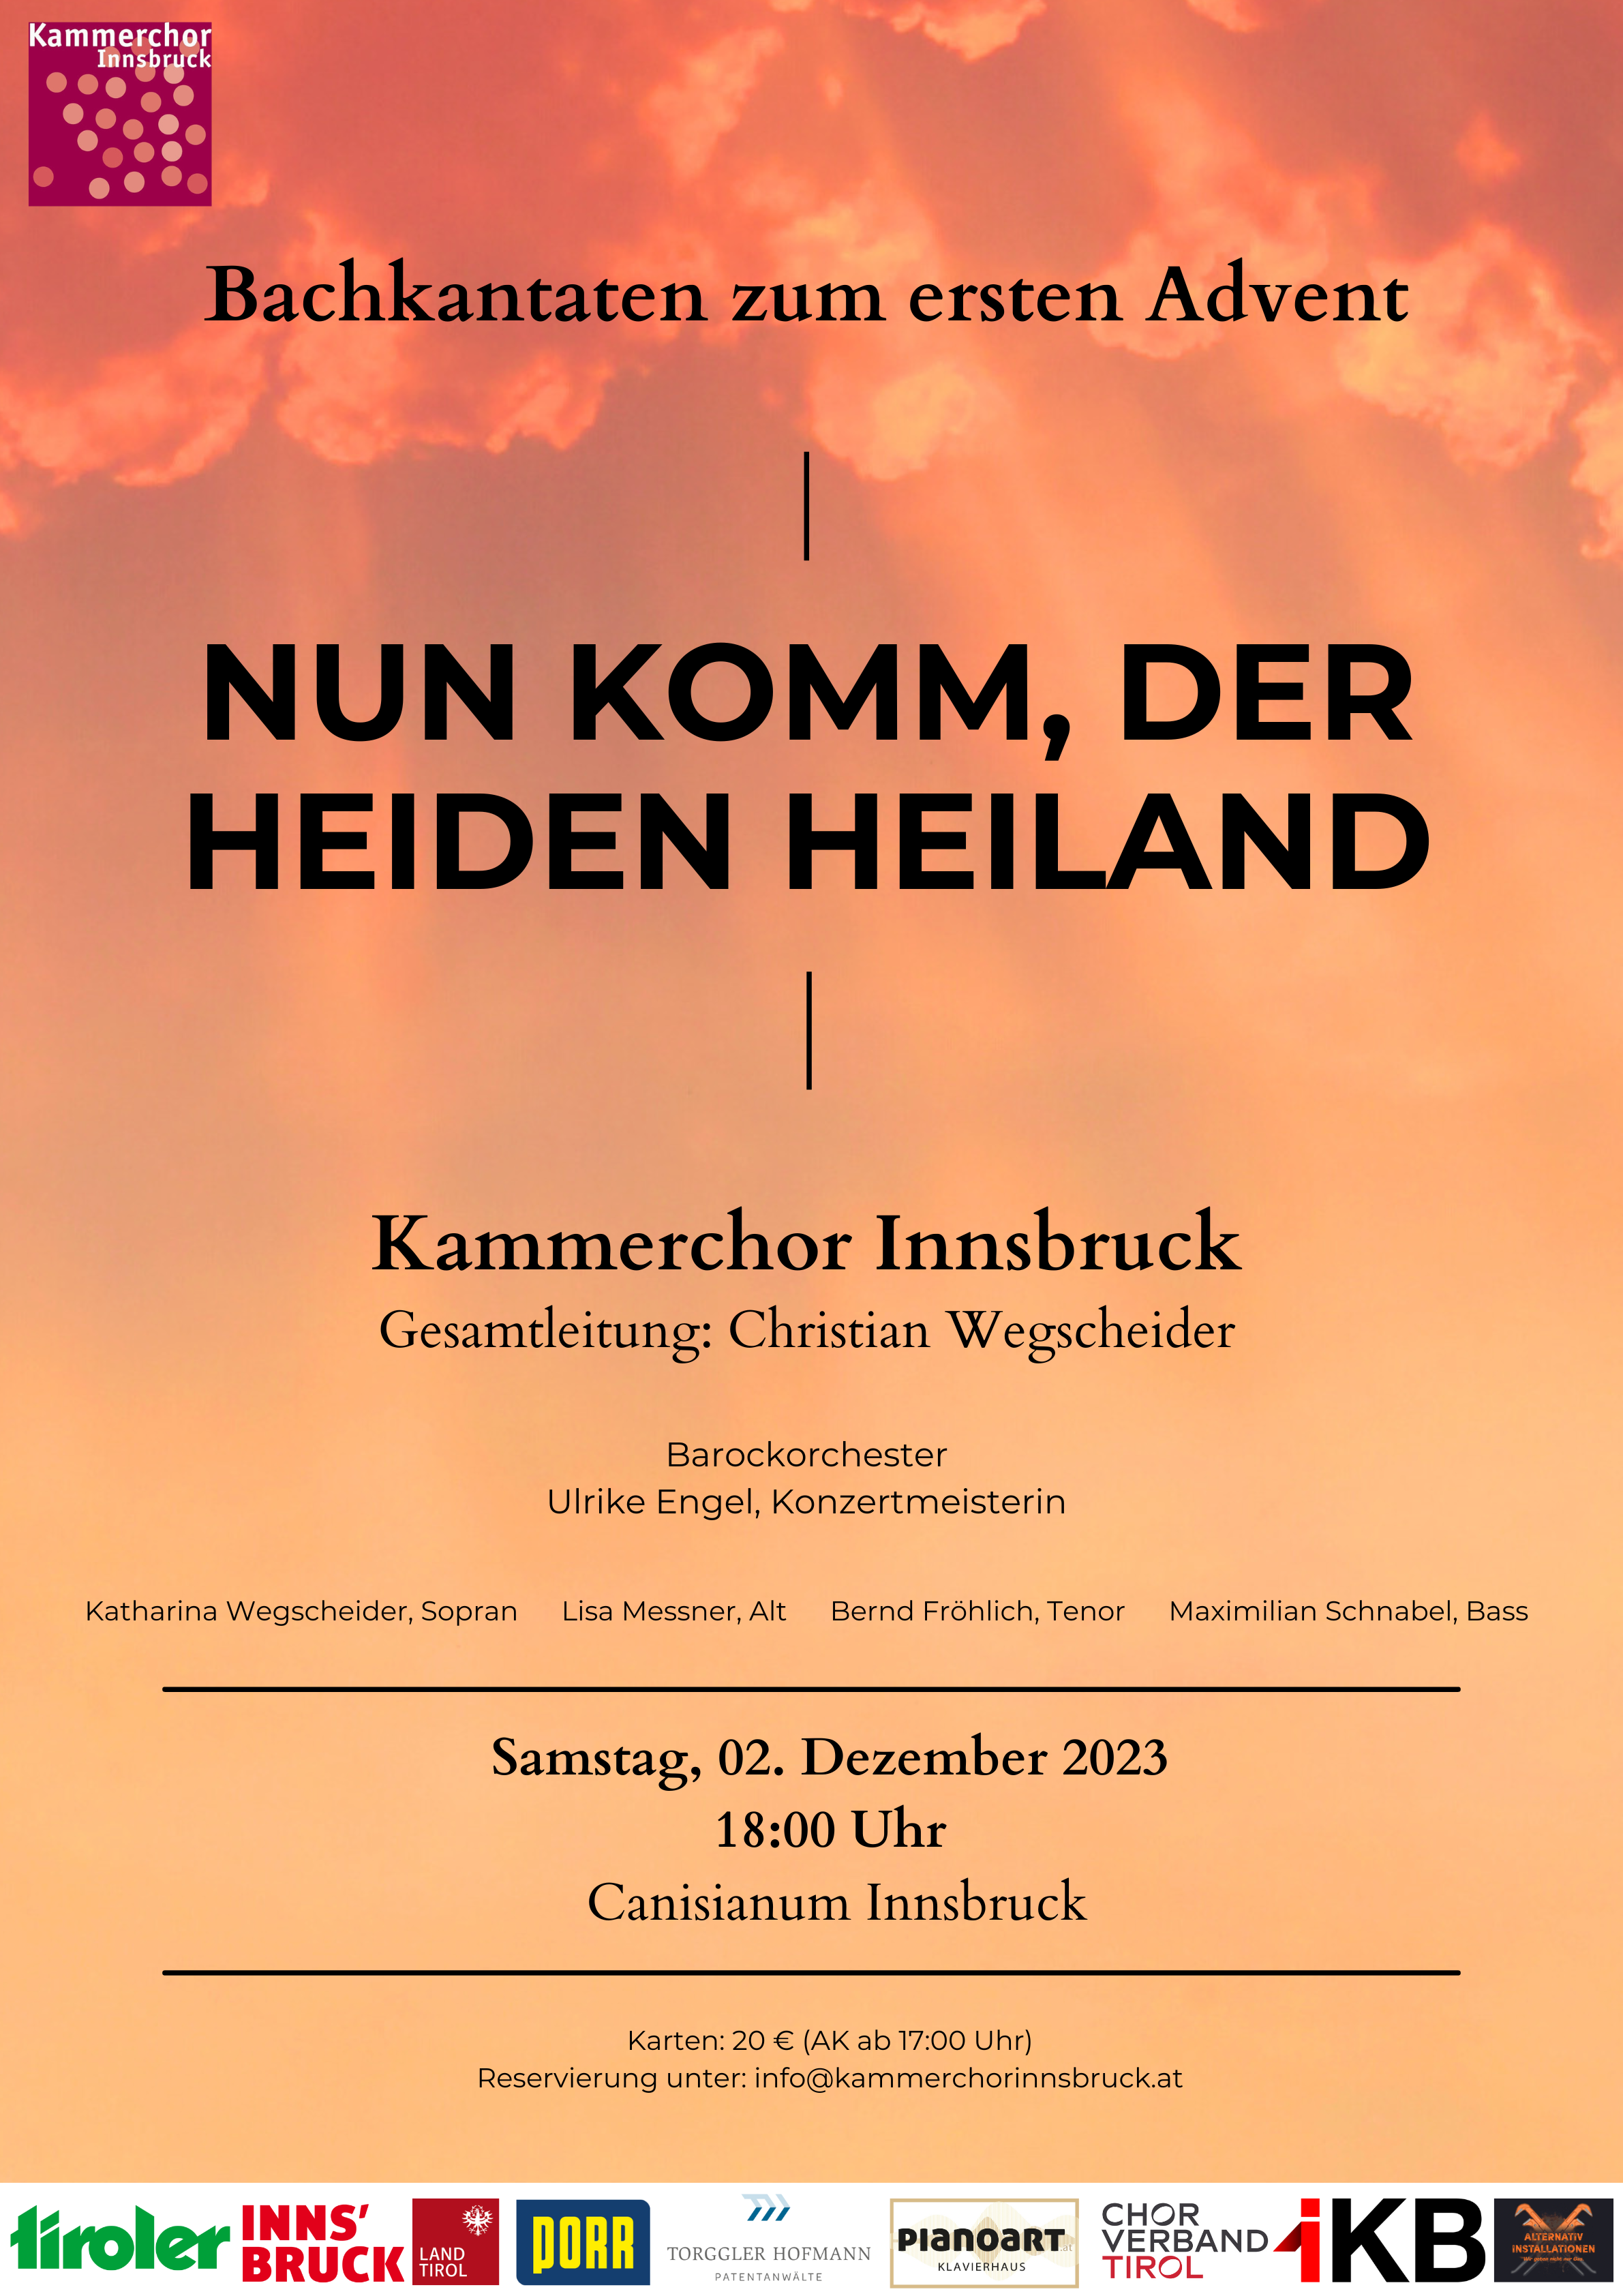 Kammerchor Innsbruck